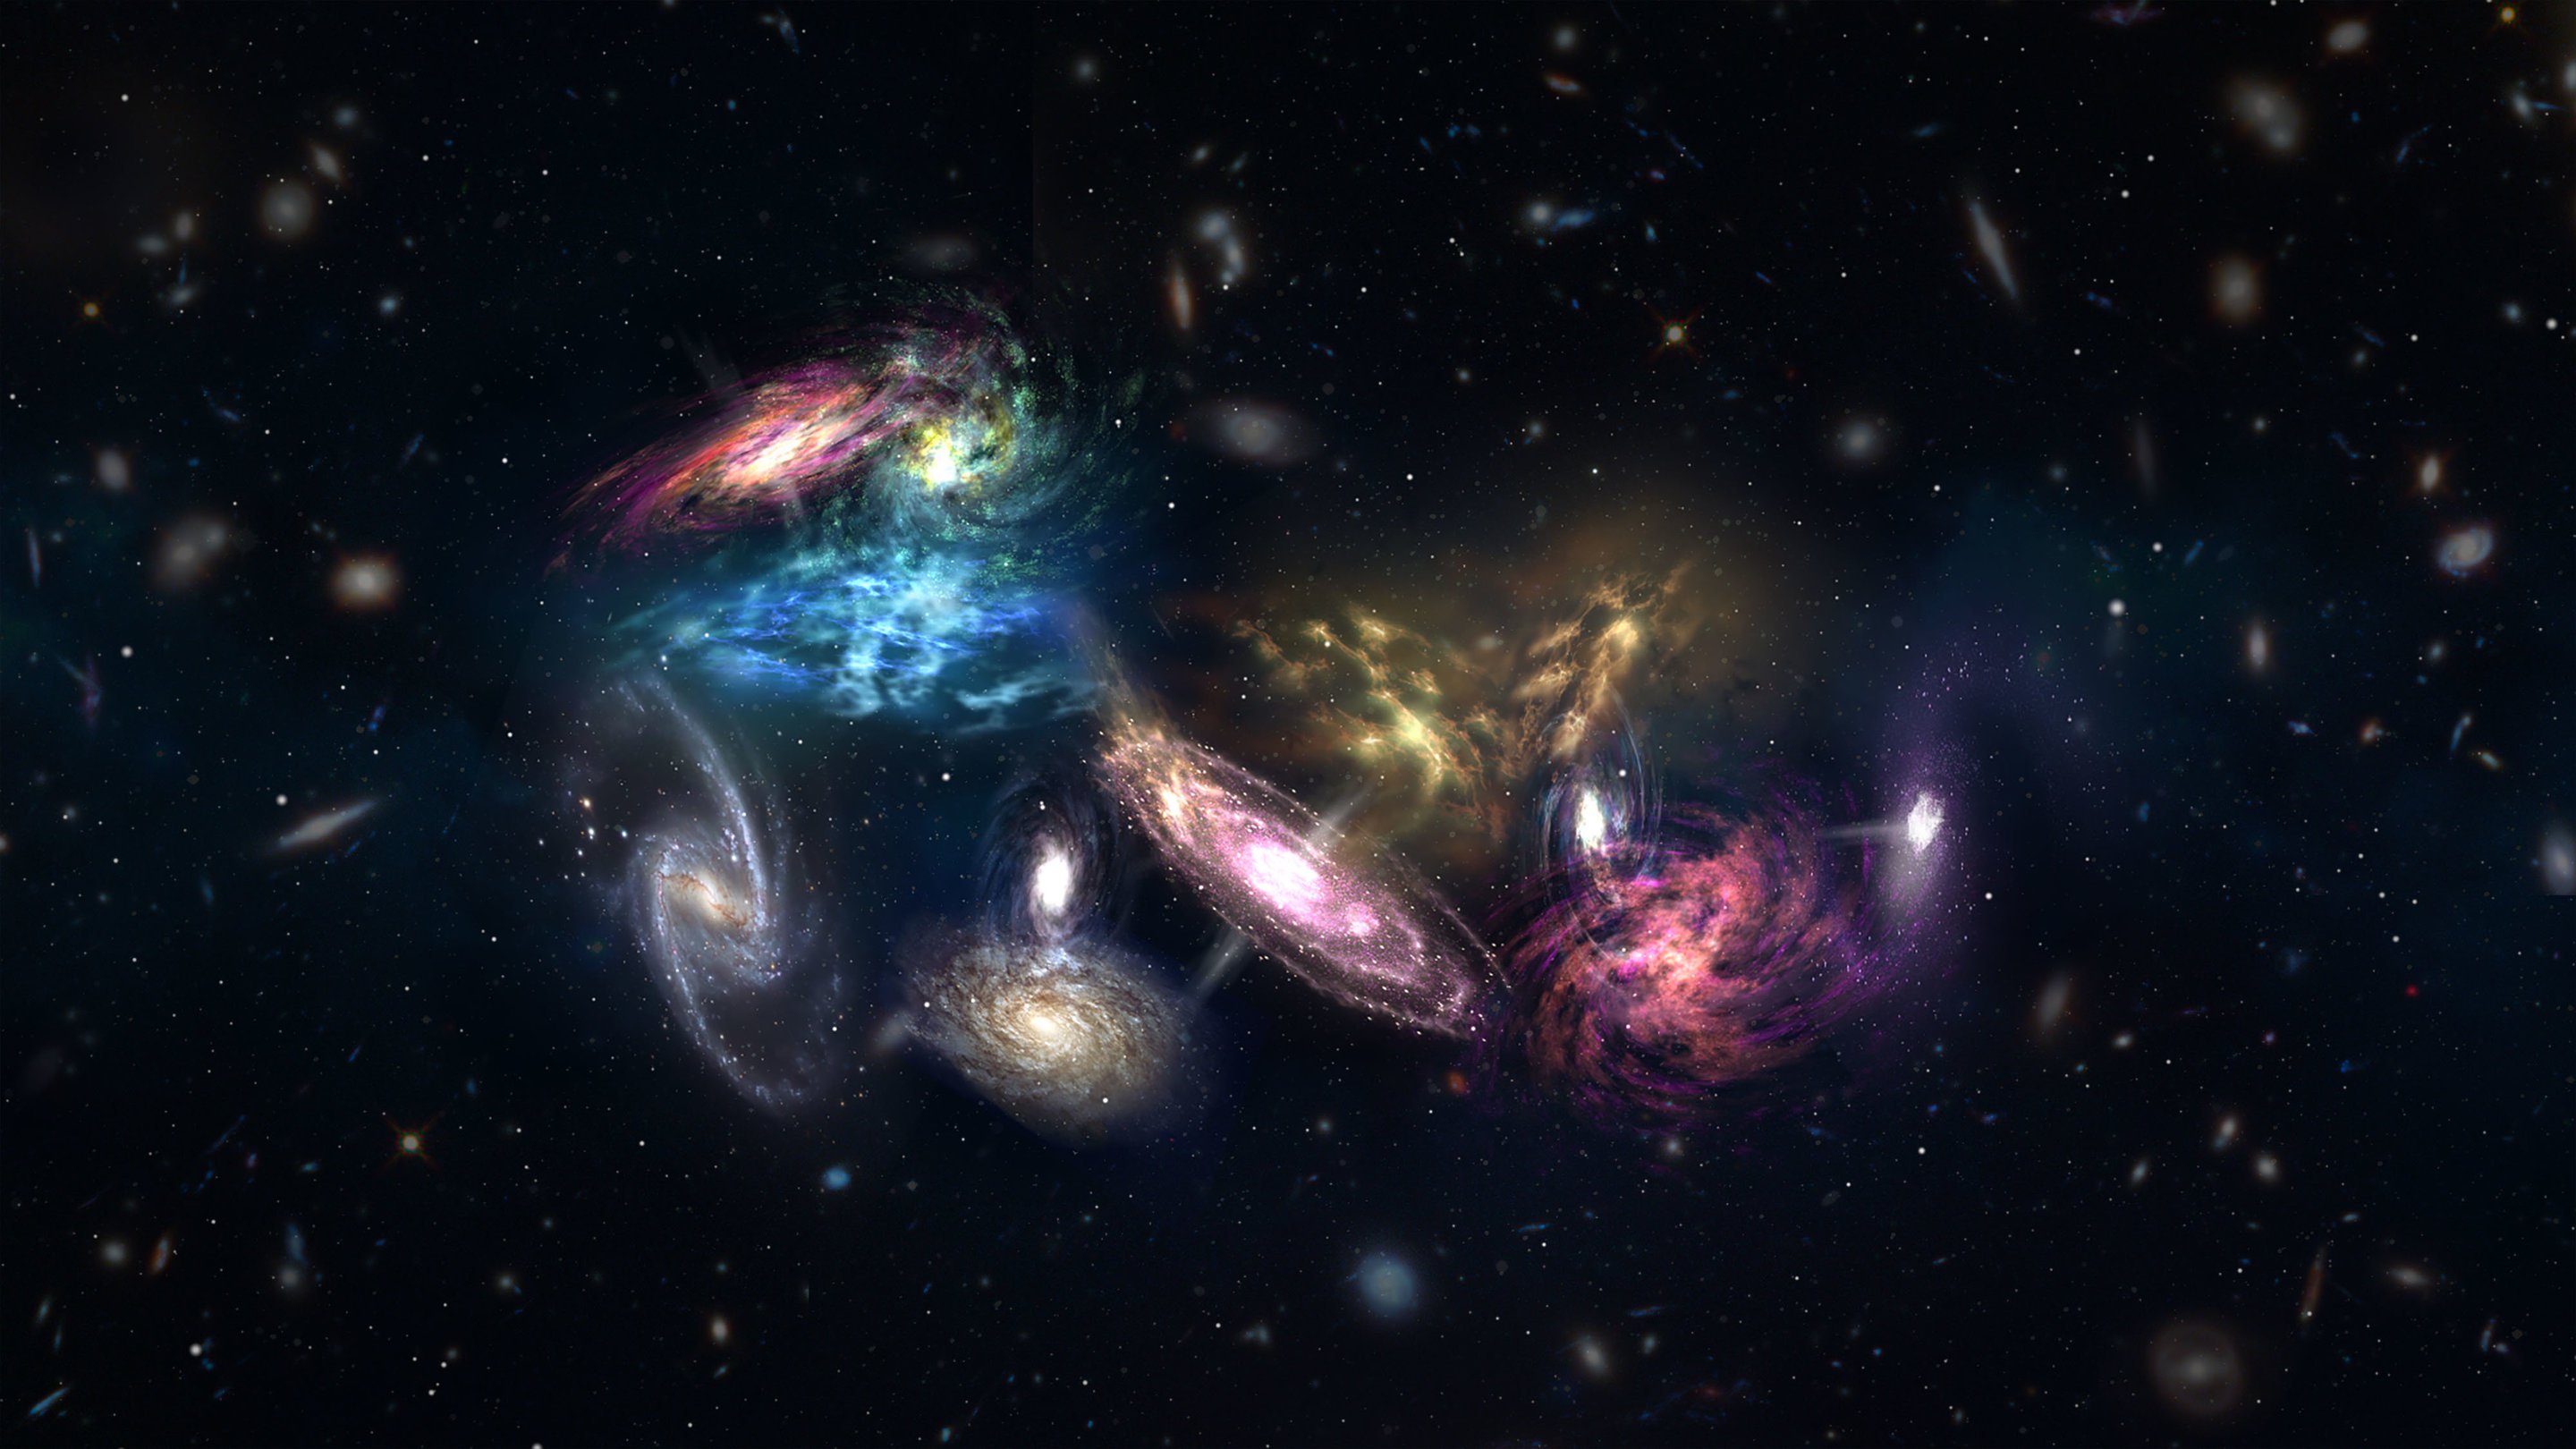 In due galassie in generale, non hanno trovato di materia oscura. Che succede?